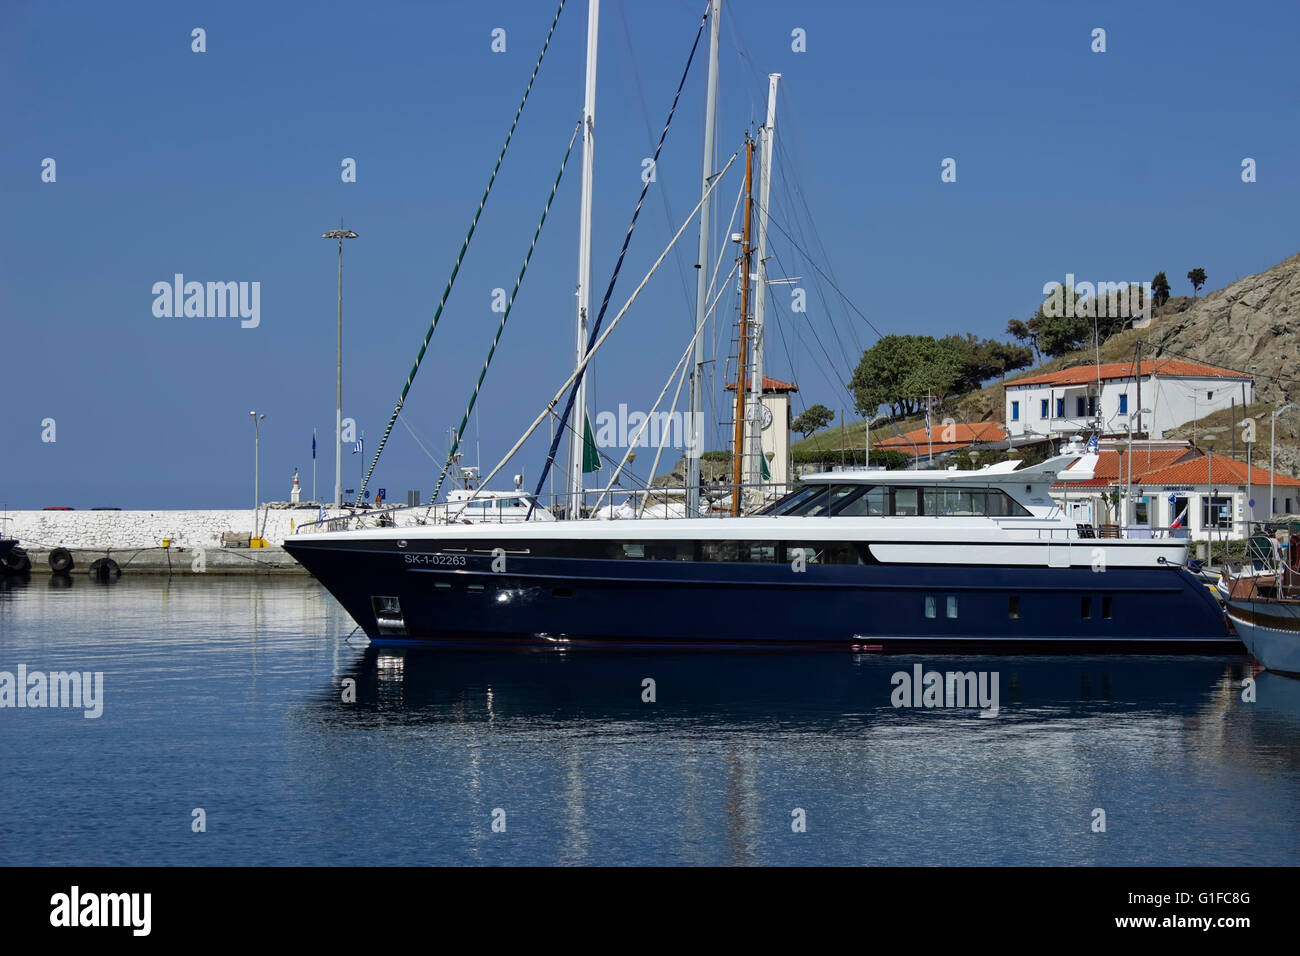 Blaue luxuriöse Superyacht verankert im Stadthafen von Myrina im Sommer. Lemnos oder Limnos Insel, nordöstliche Ägäis, Griechenland. Stockfoto